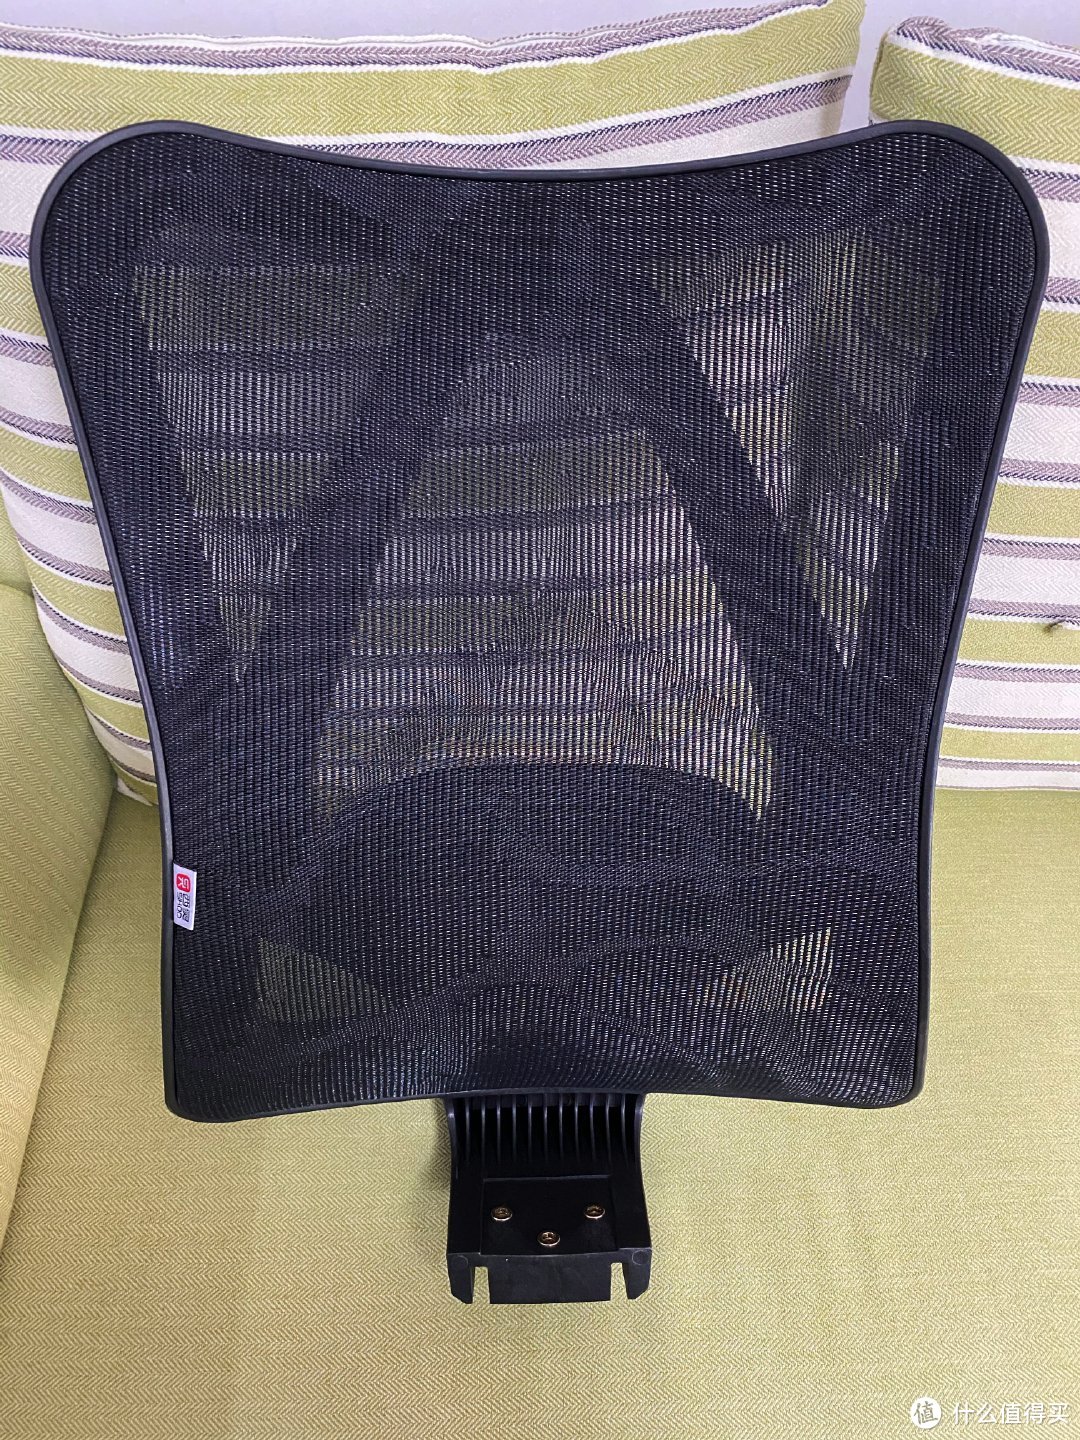 人体工学椅入门 — SIHOO 西昊M57电脑椅体验分享